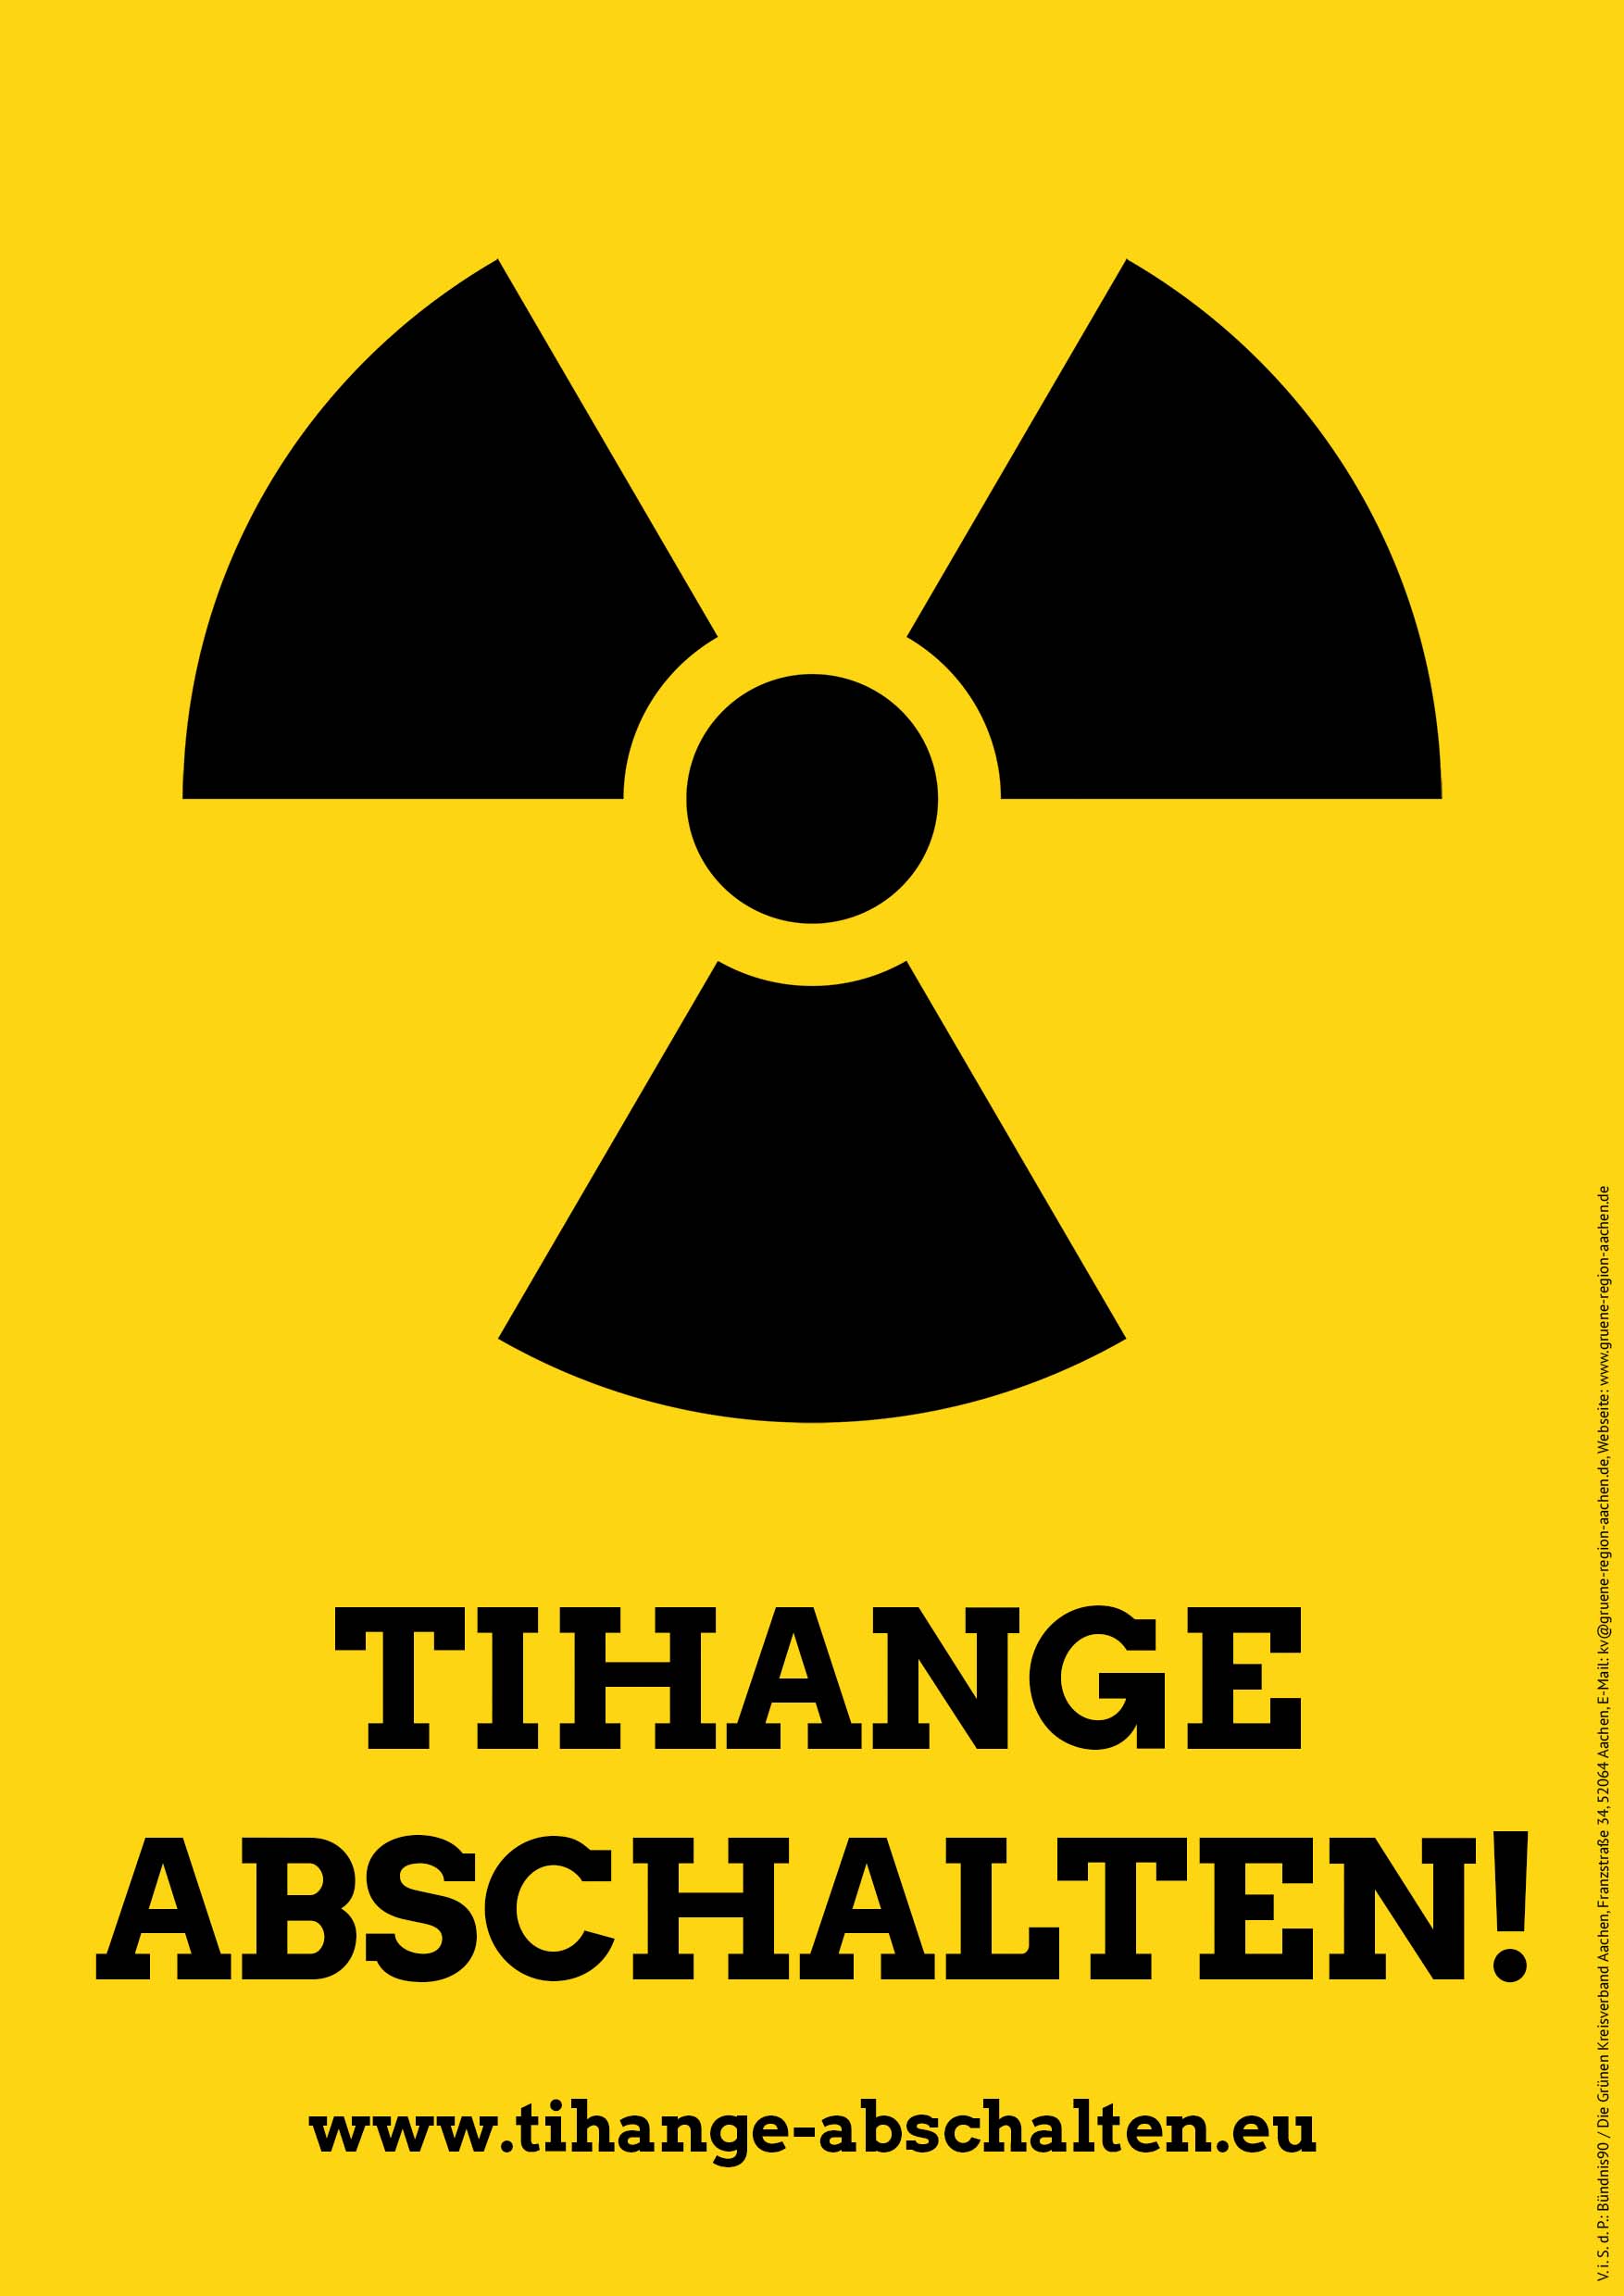 Die Reaktorsicherheitskommission und die Risse in den belgischen AKW Tihange und Doel